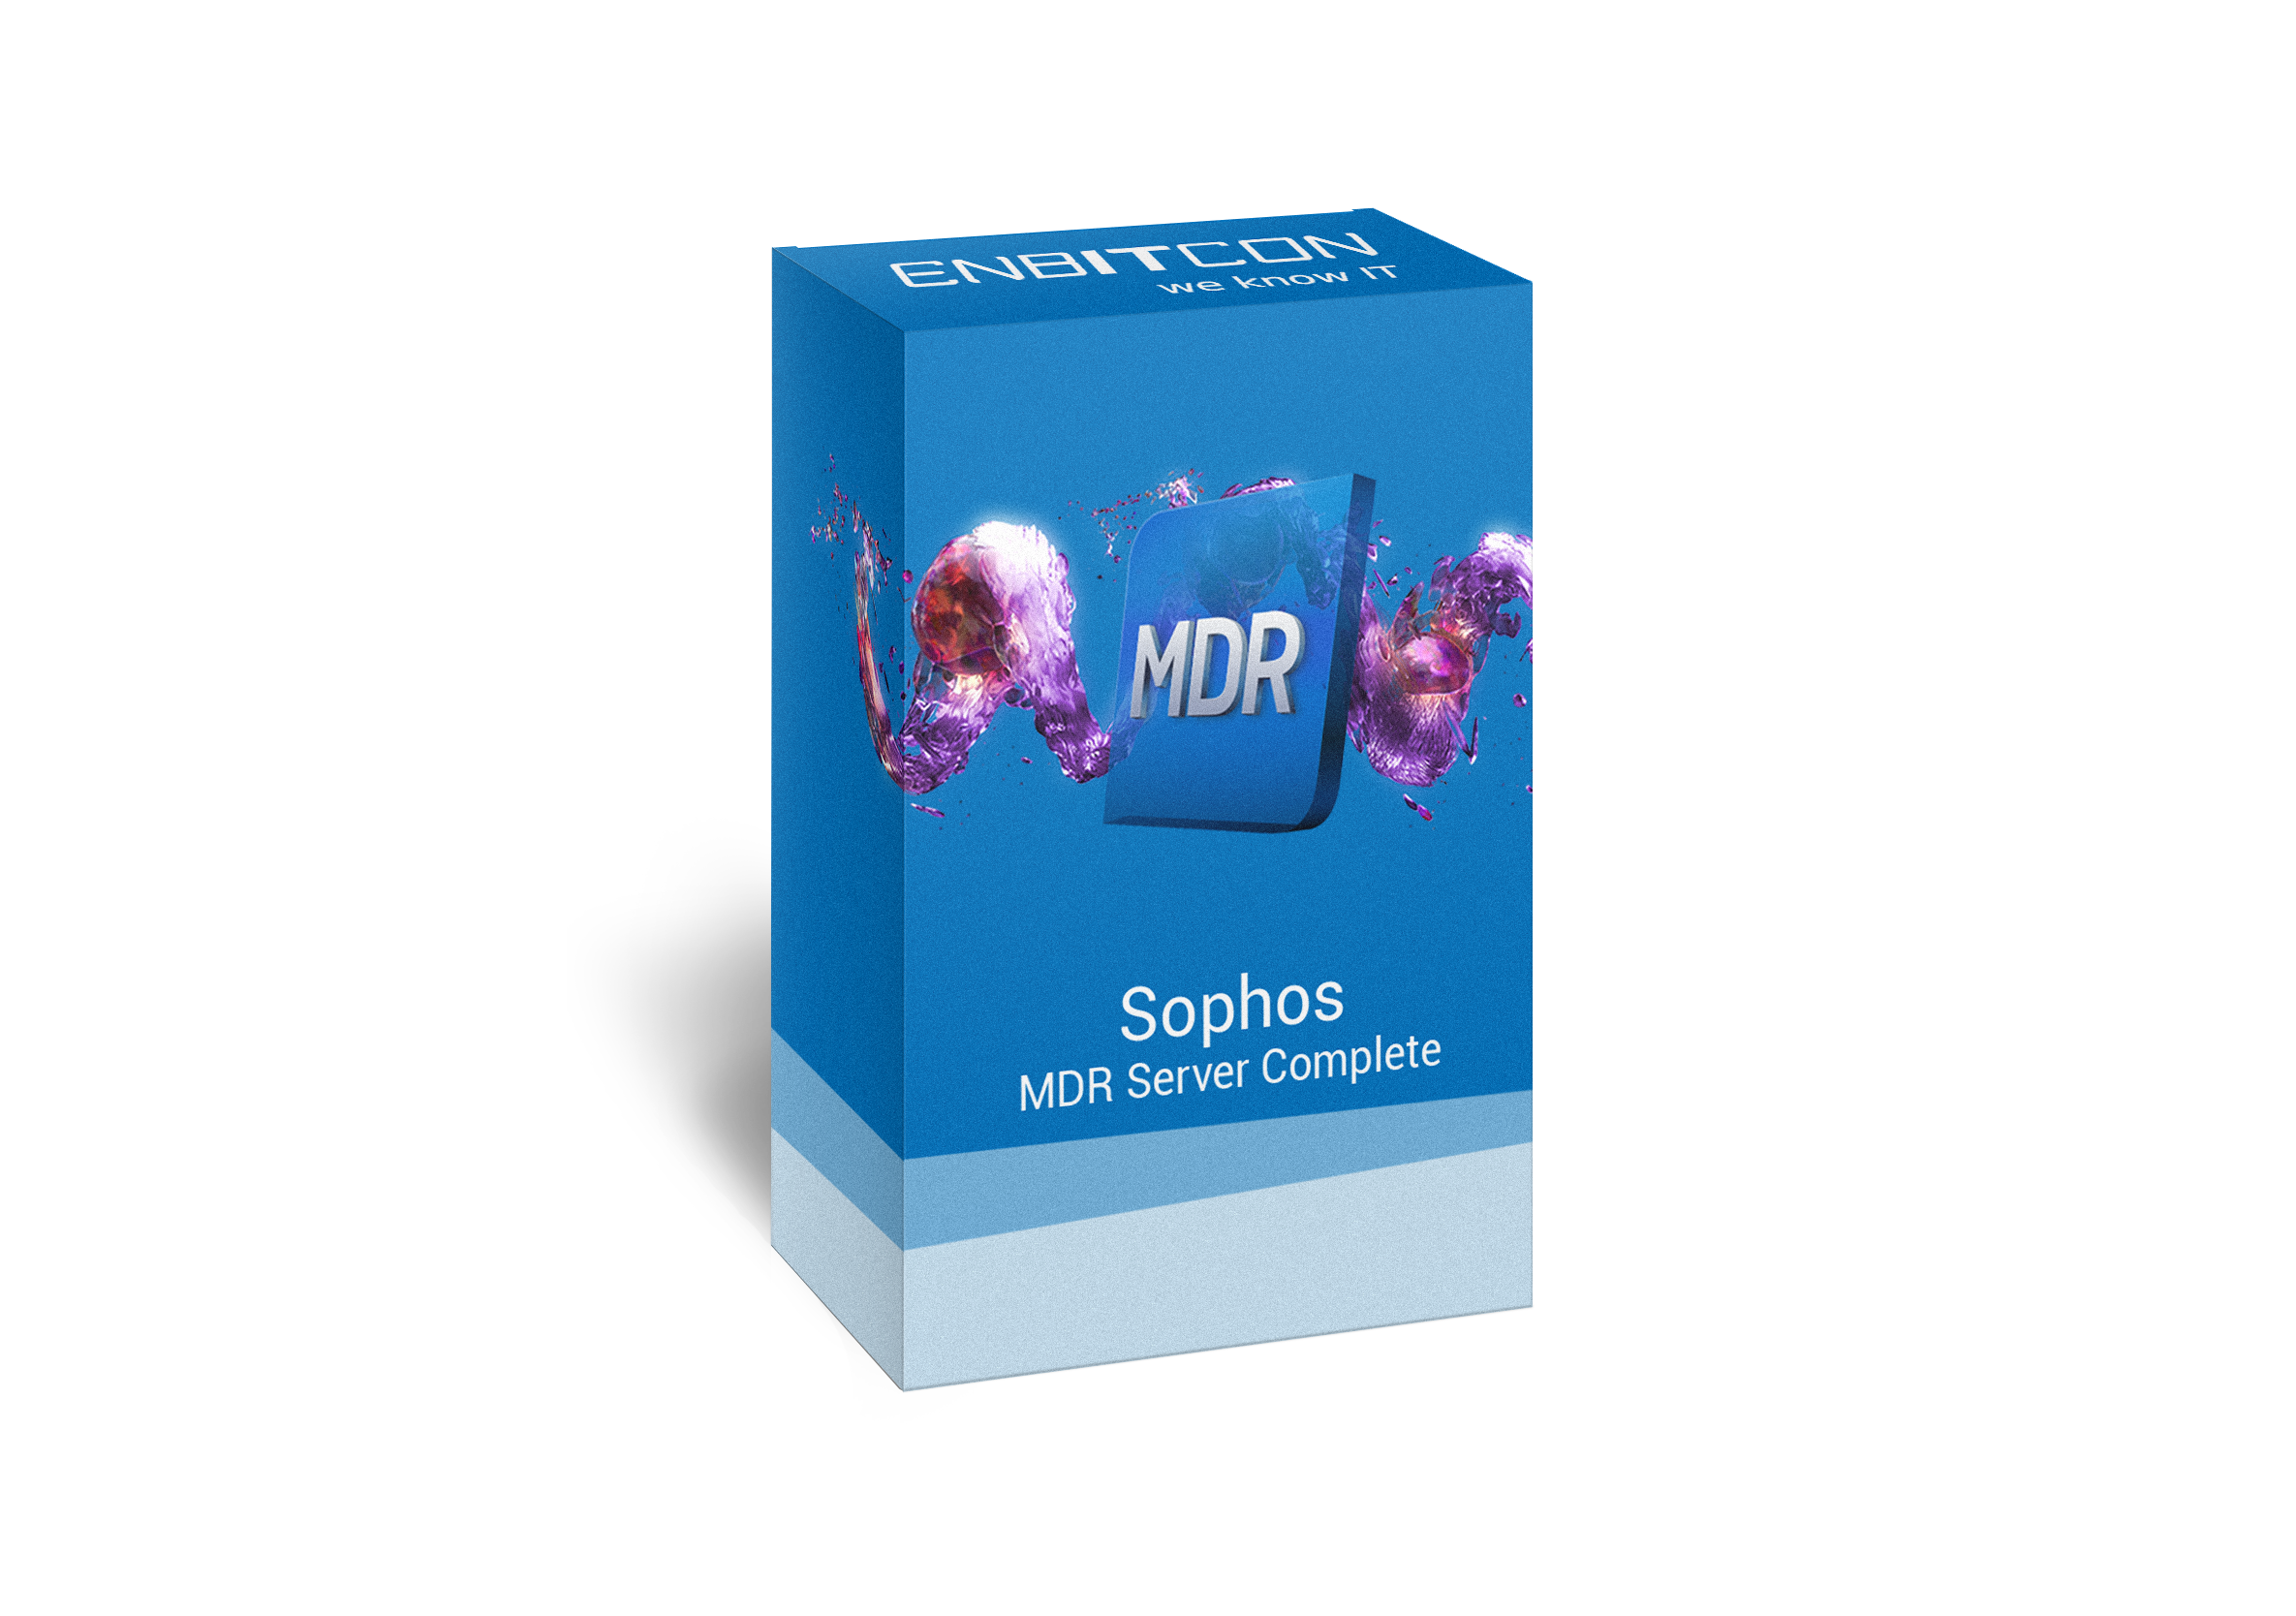 Sophos MDR Server Complete Box Vorschaubild bestehend aus einem MDR Kasten auf einer blauen Box